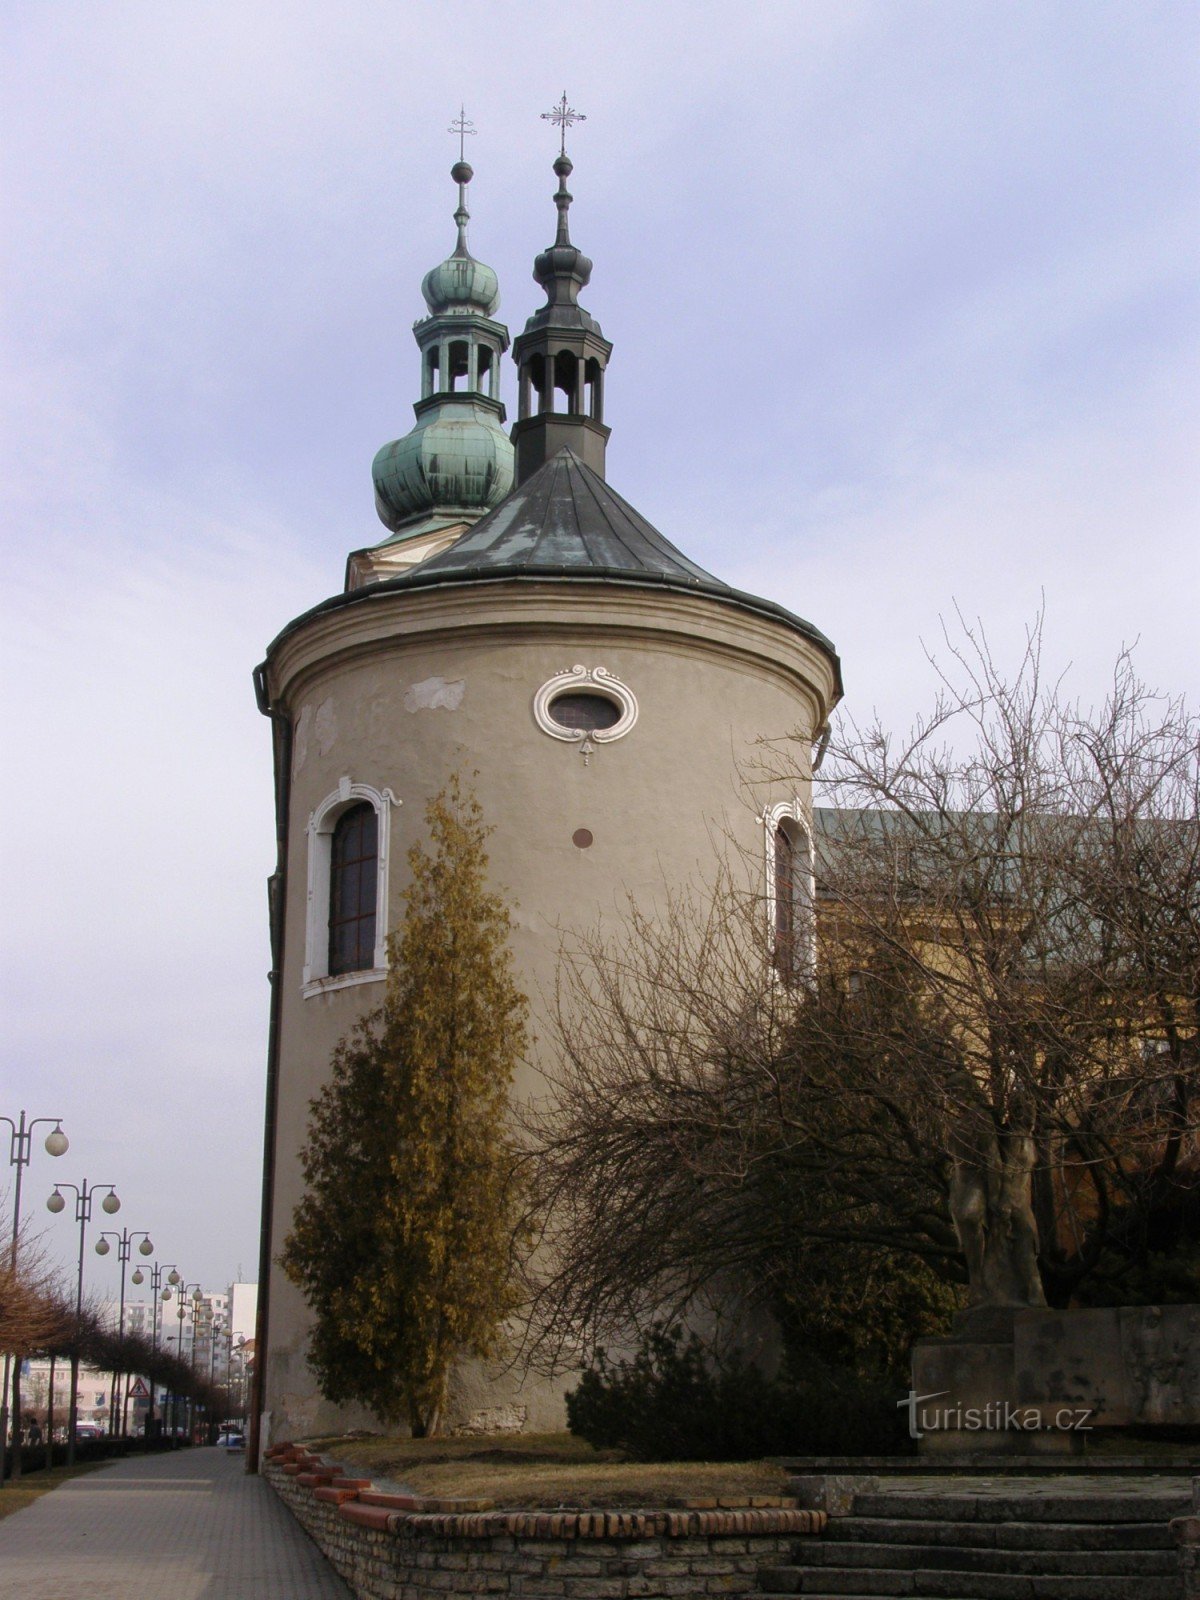 Nové Město nad Metují - monastery church of the Nativity of the Virgin Mary